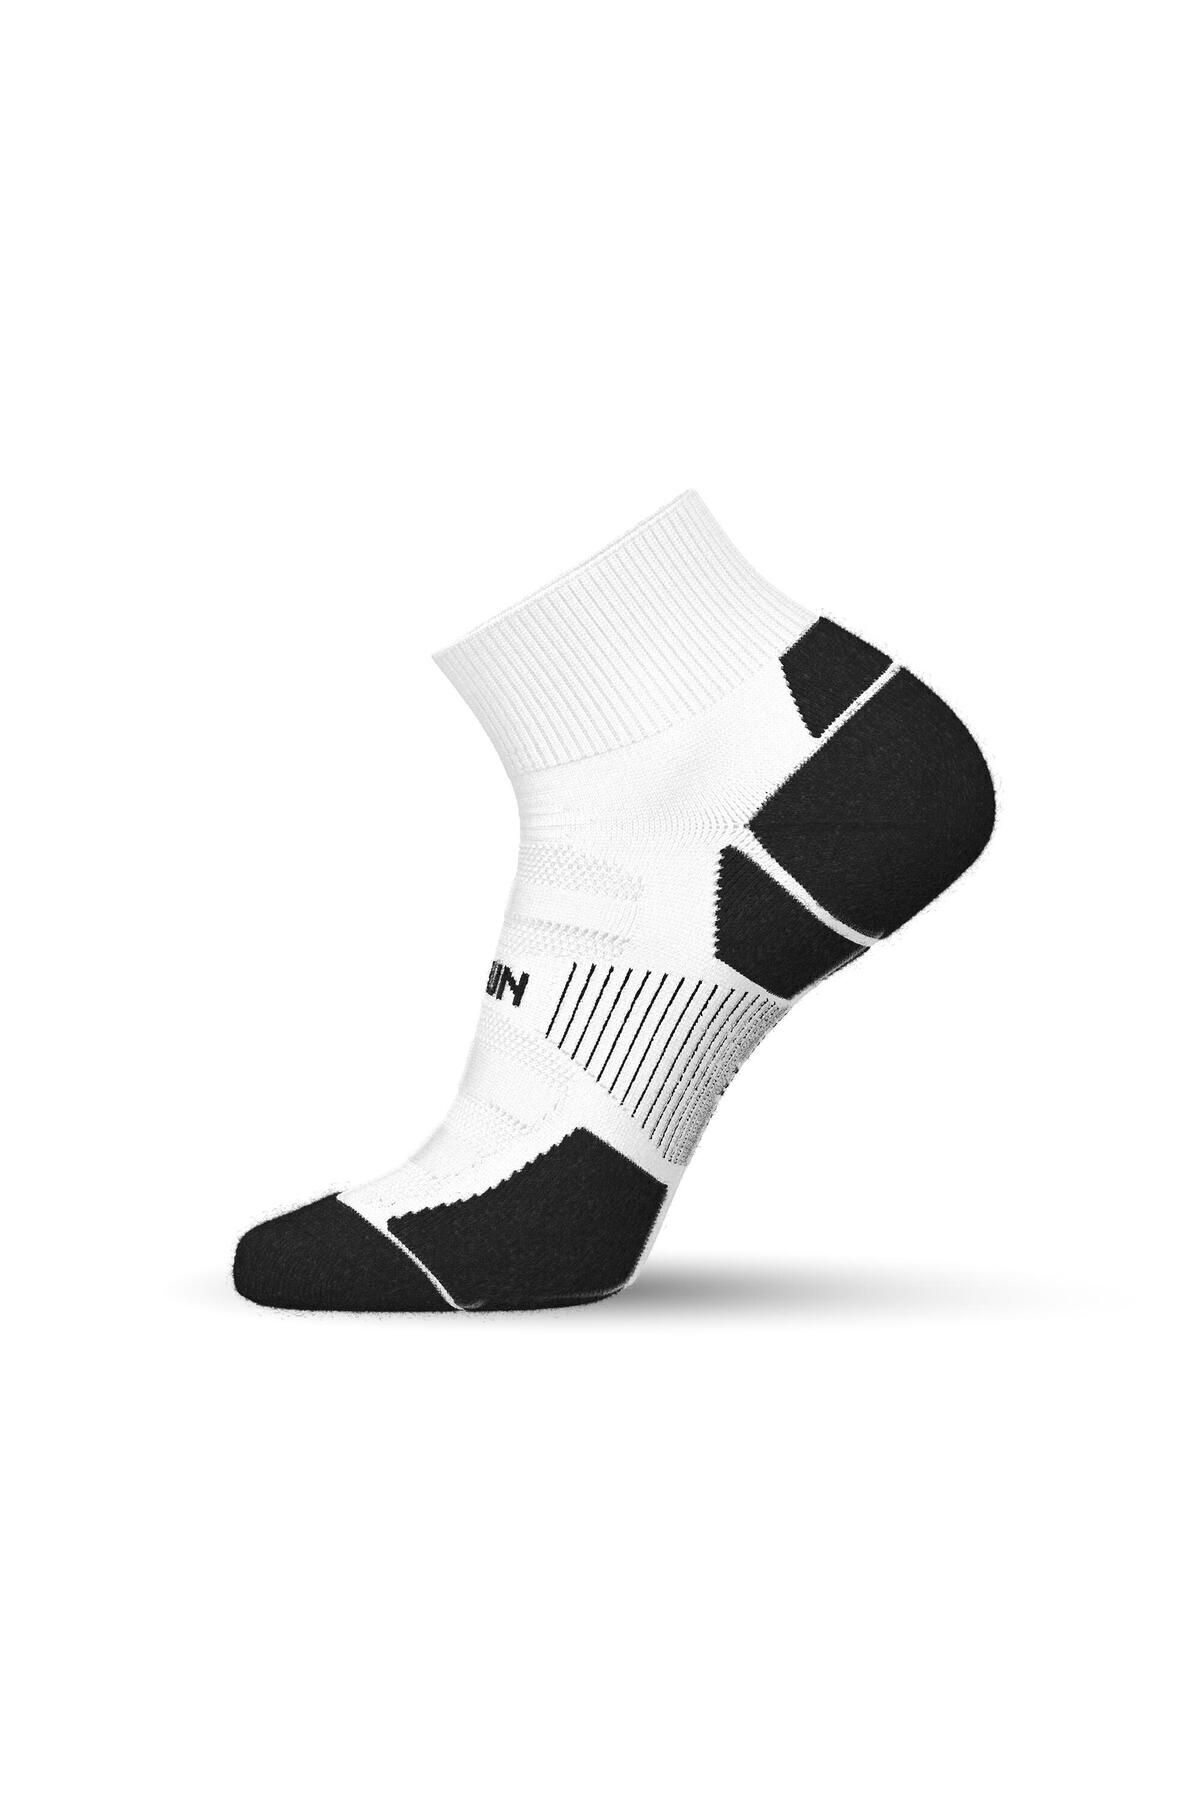 Decathlon Orta Boy Konçlu Koşu Çorabı - Ince - Beyaz - Run900